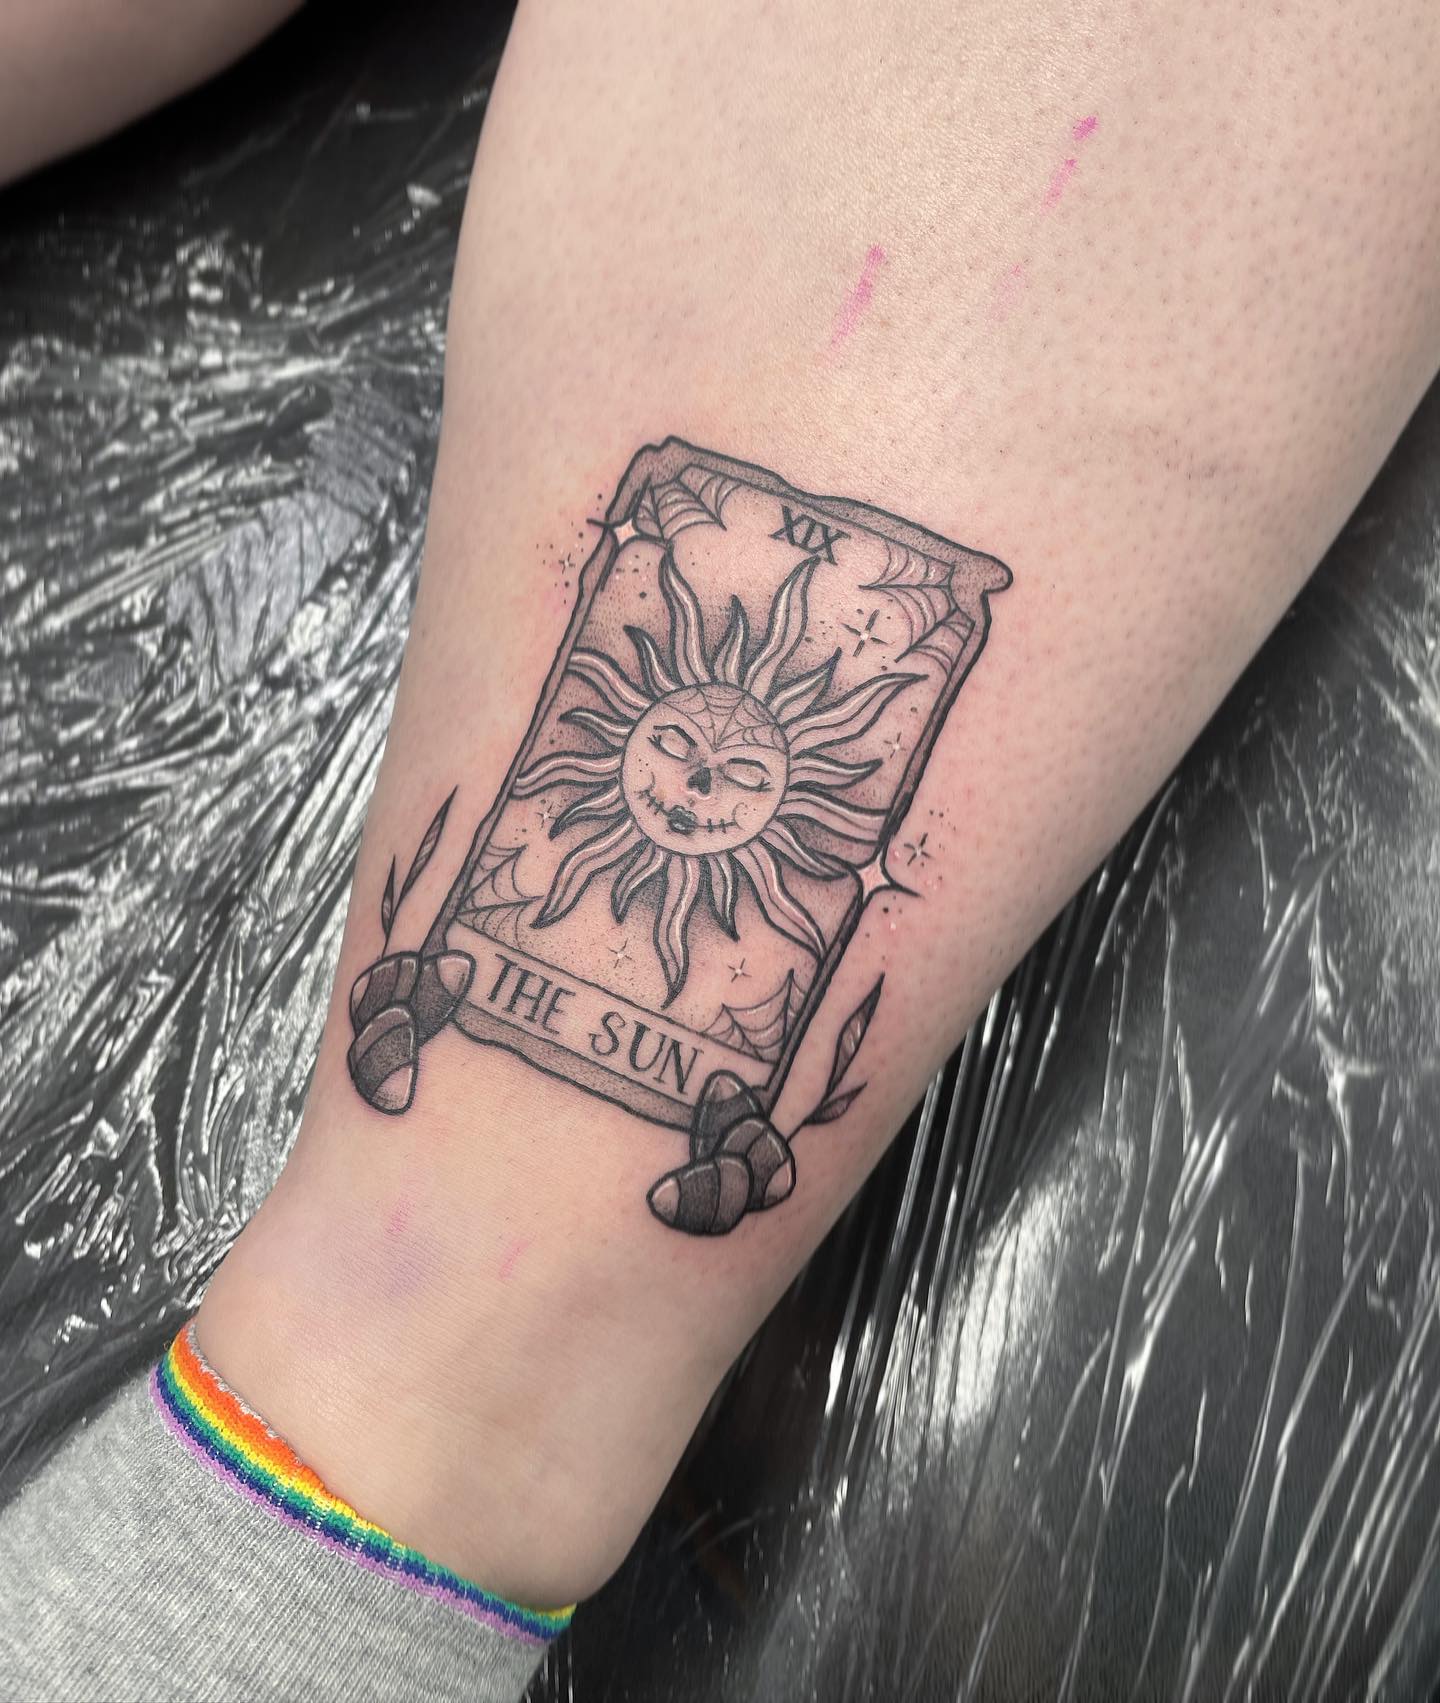 Tatuaje de la carta del sol